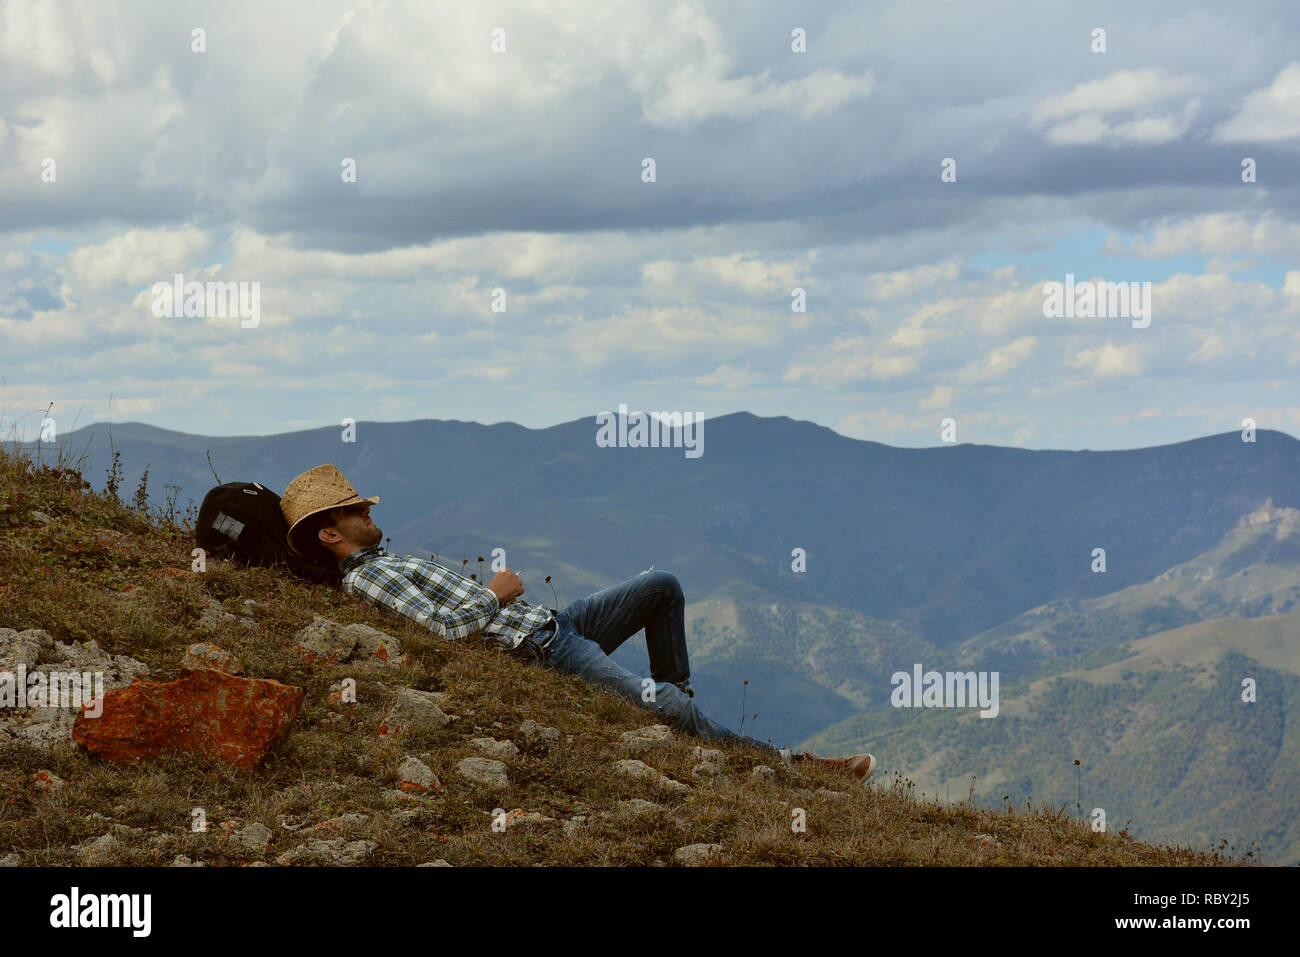 Jeune homme dans des vêtements de cow-boy reste sur les montagnes.Traveler bénéficiant d'une vue panoramique au cours de la randonnée, avec en arrière-plan magnifique paysage de montagne. Banque D'Images